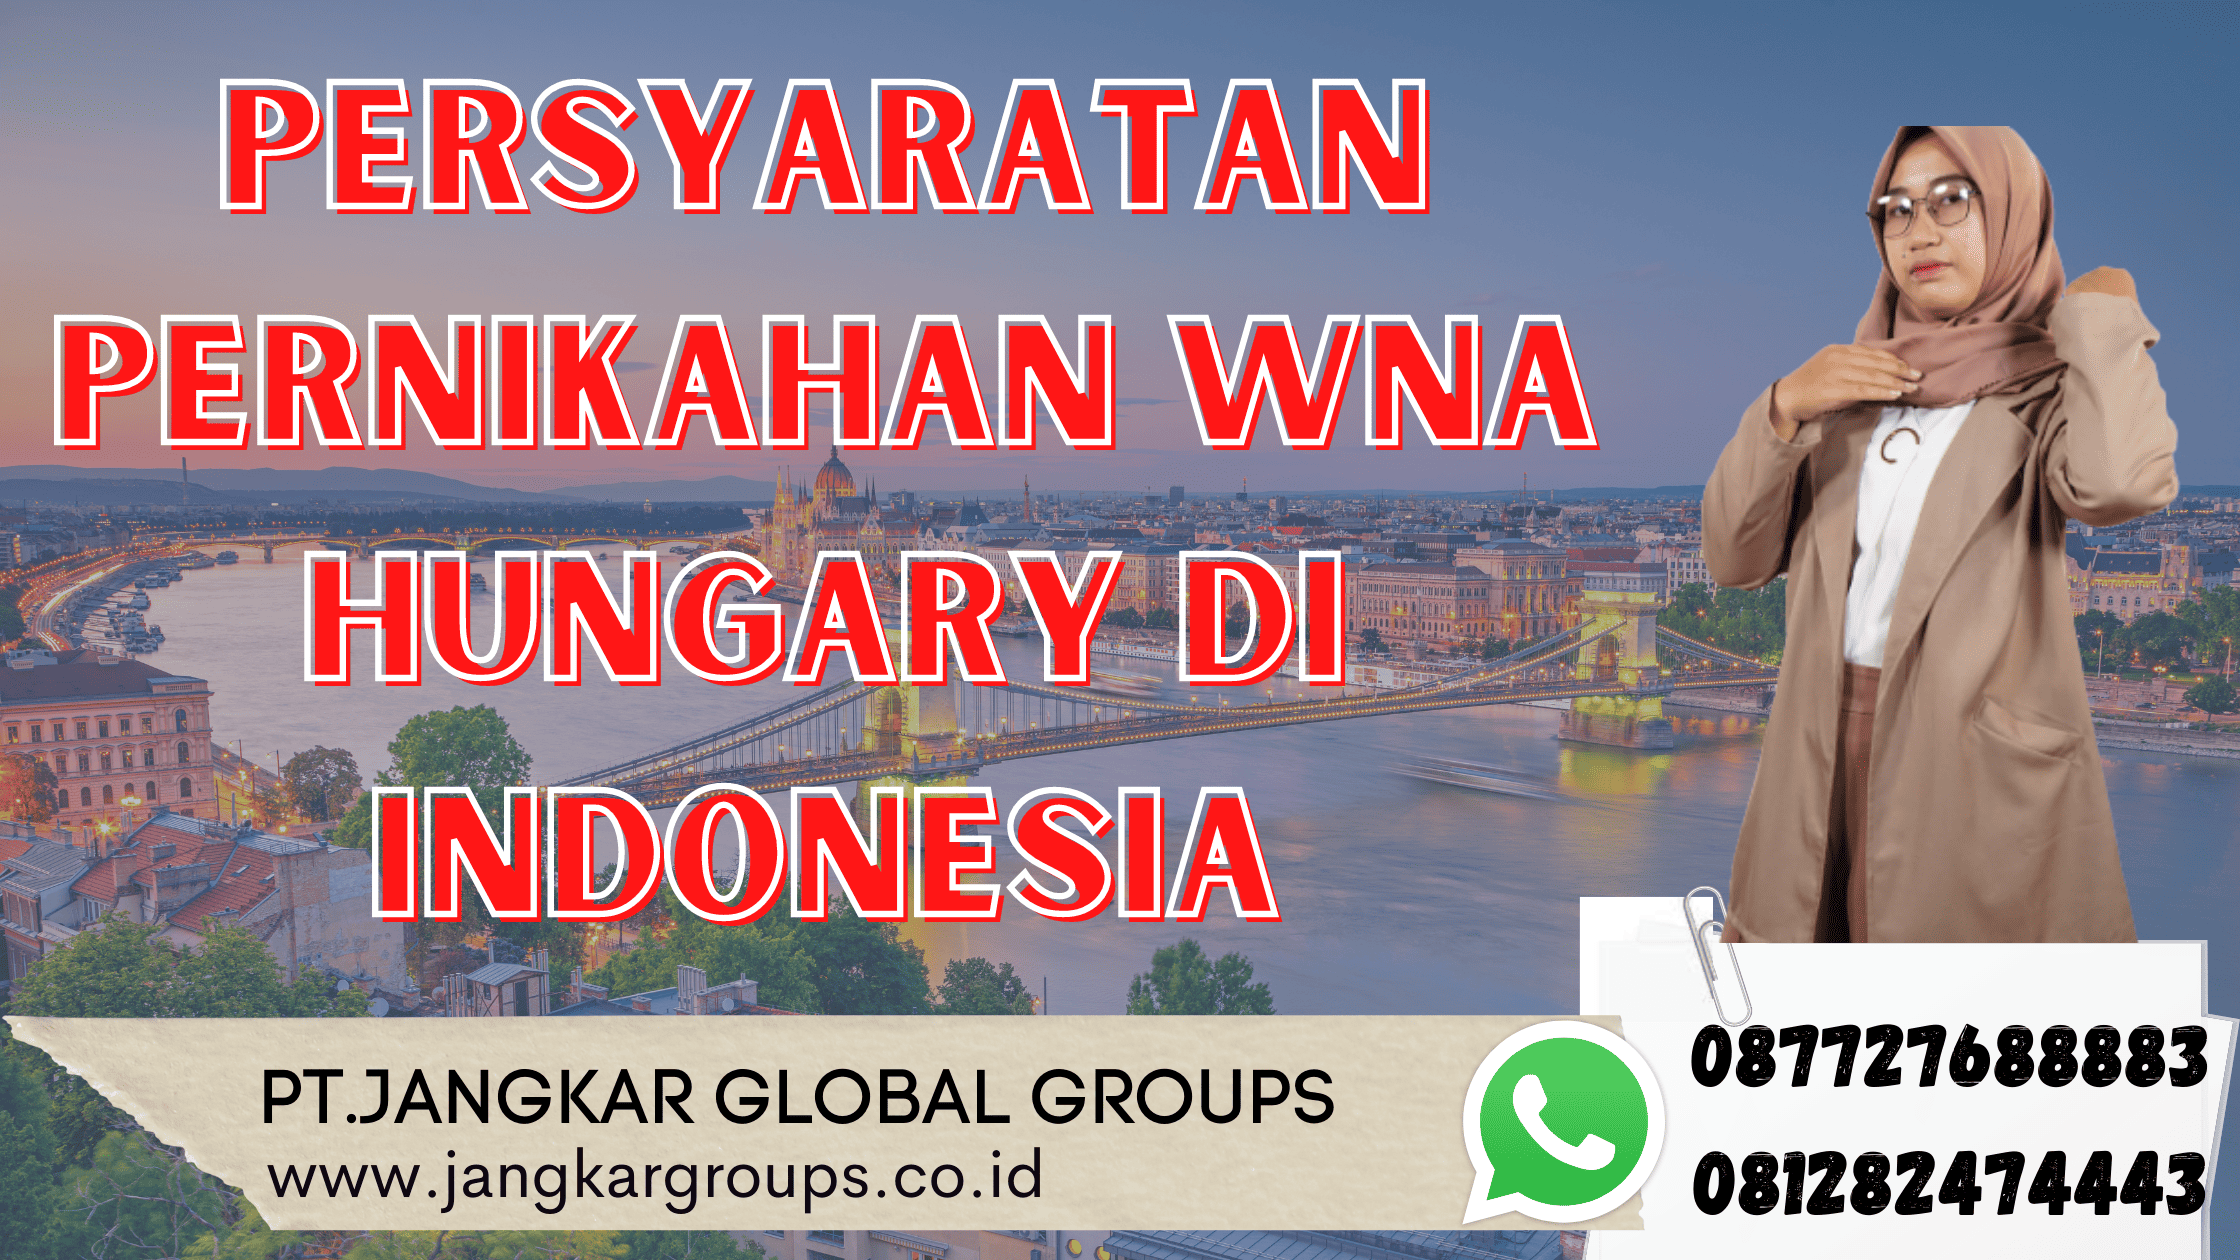 Persyaratan Pernikahan WNA Hungary di Indonesia